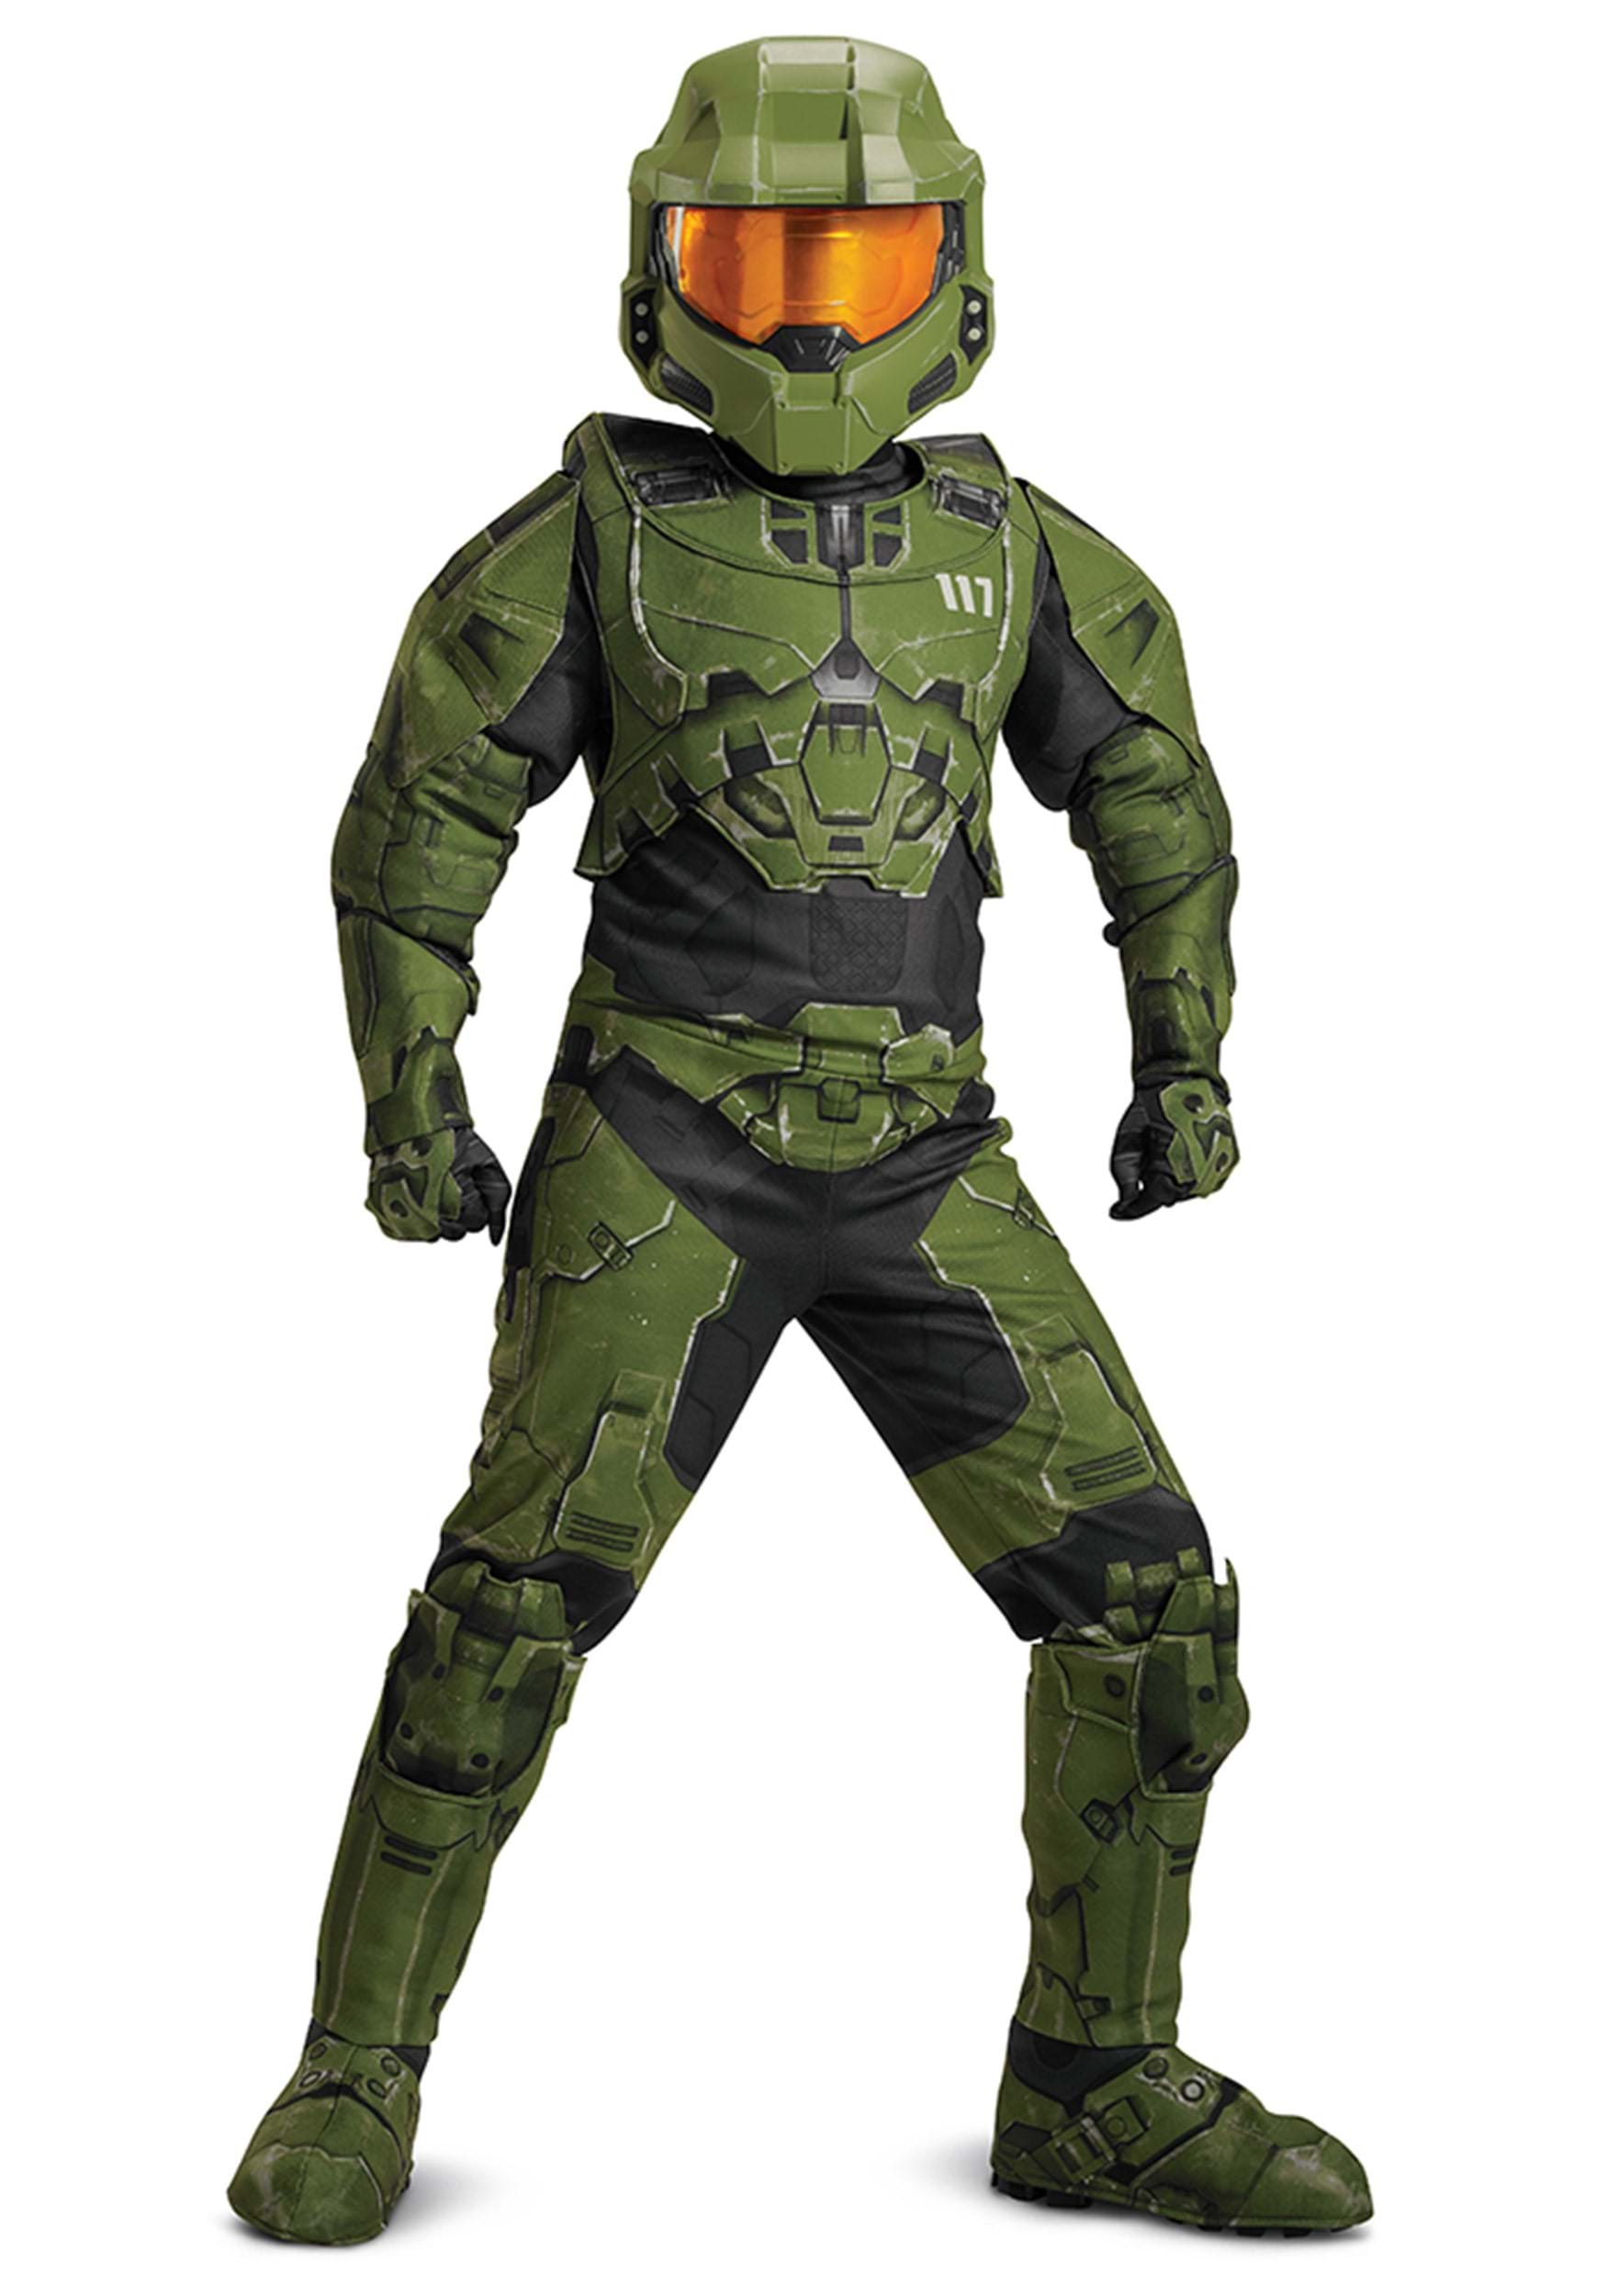 Image of Halo Infinite Master Chief Prestige Costume for Kids ID DI105009-14/16